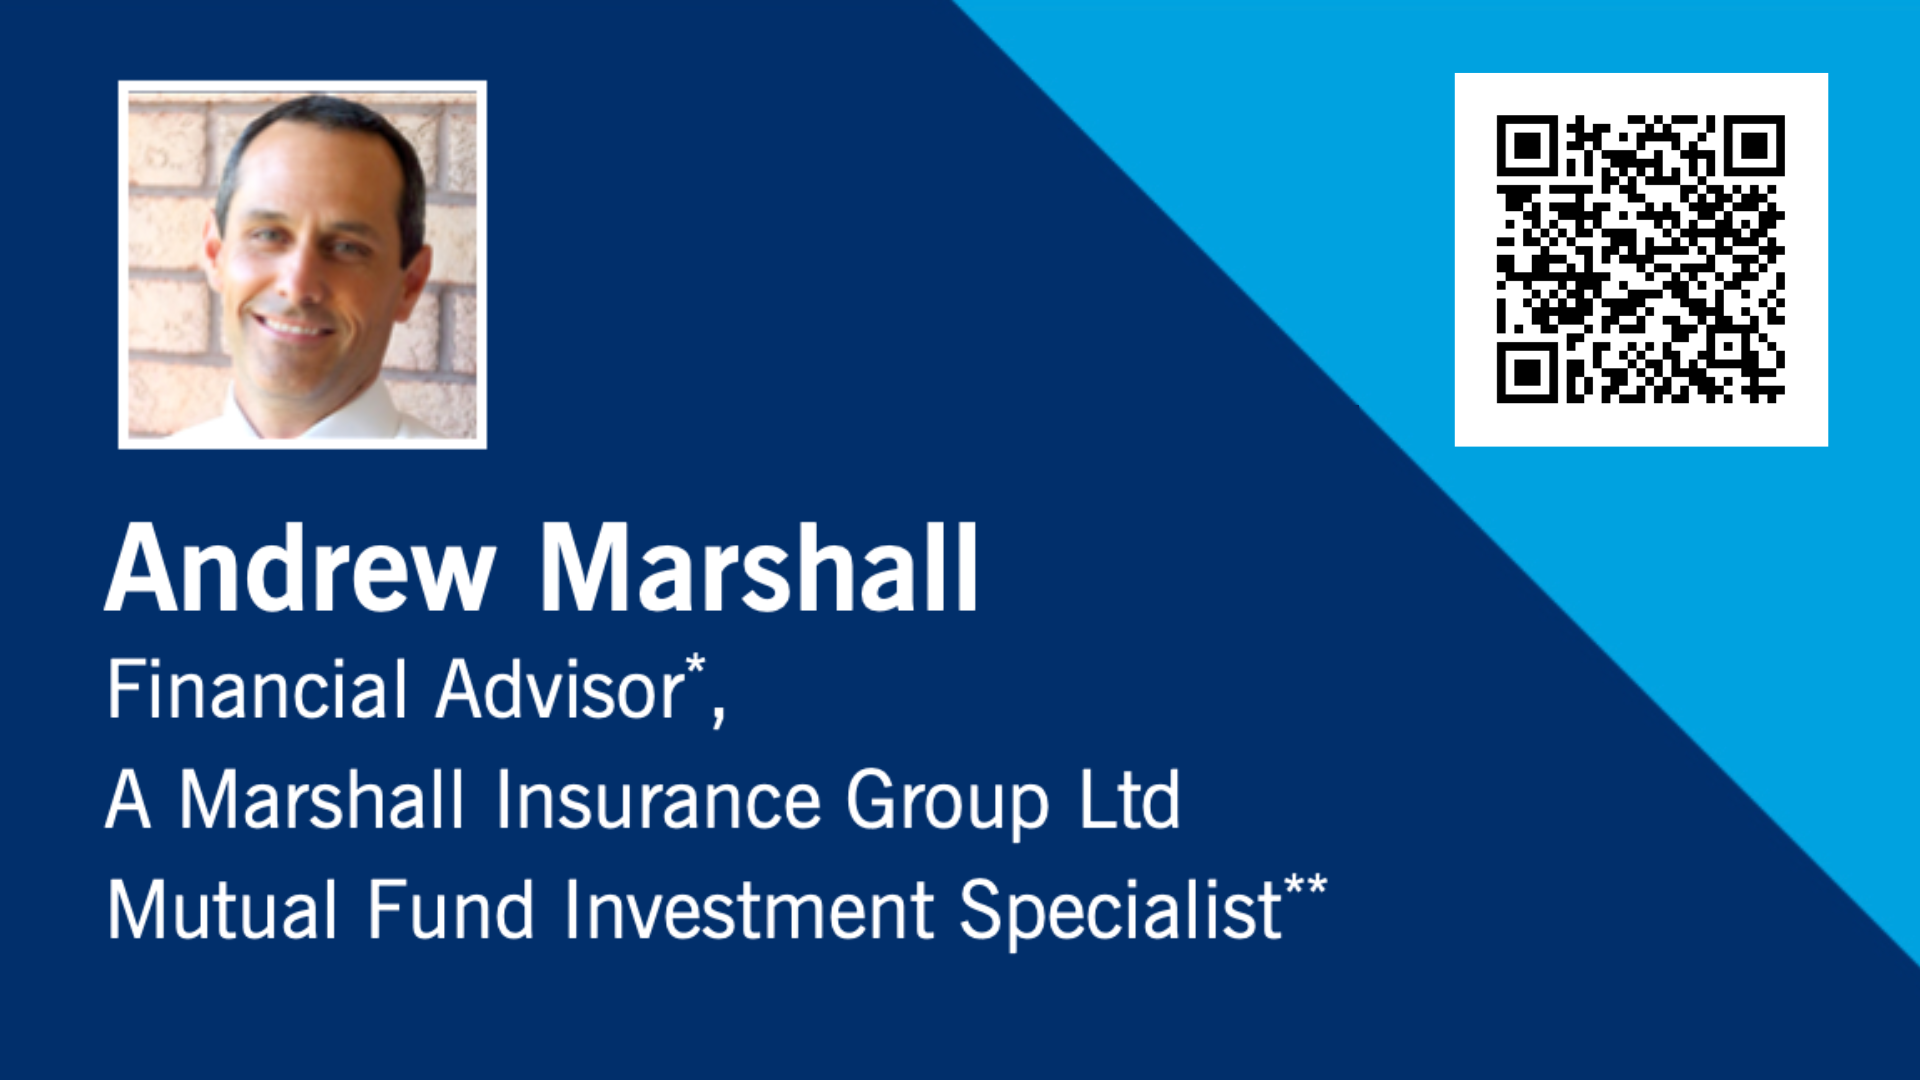 Andrew Marshall Financial Advisor